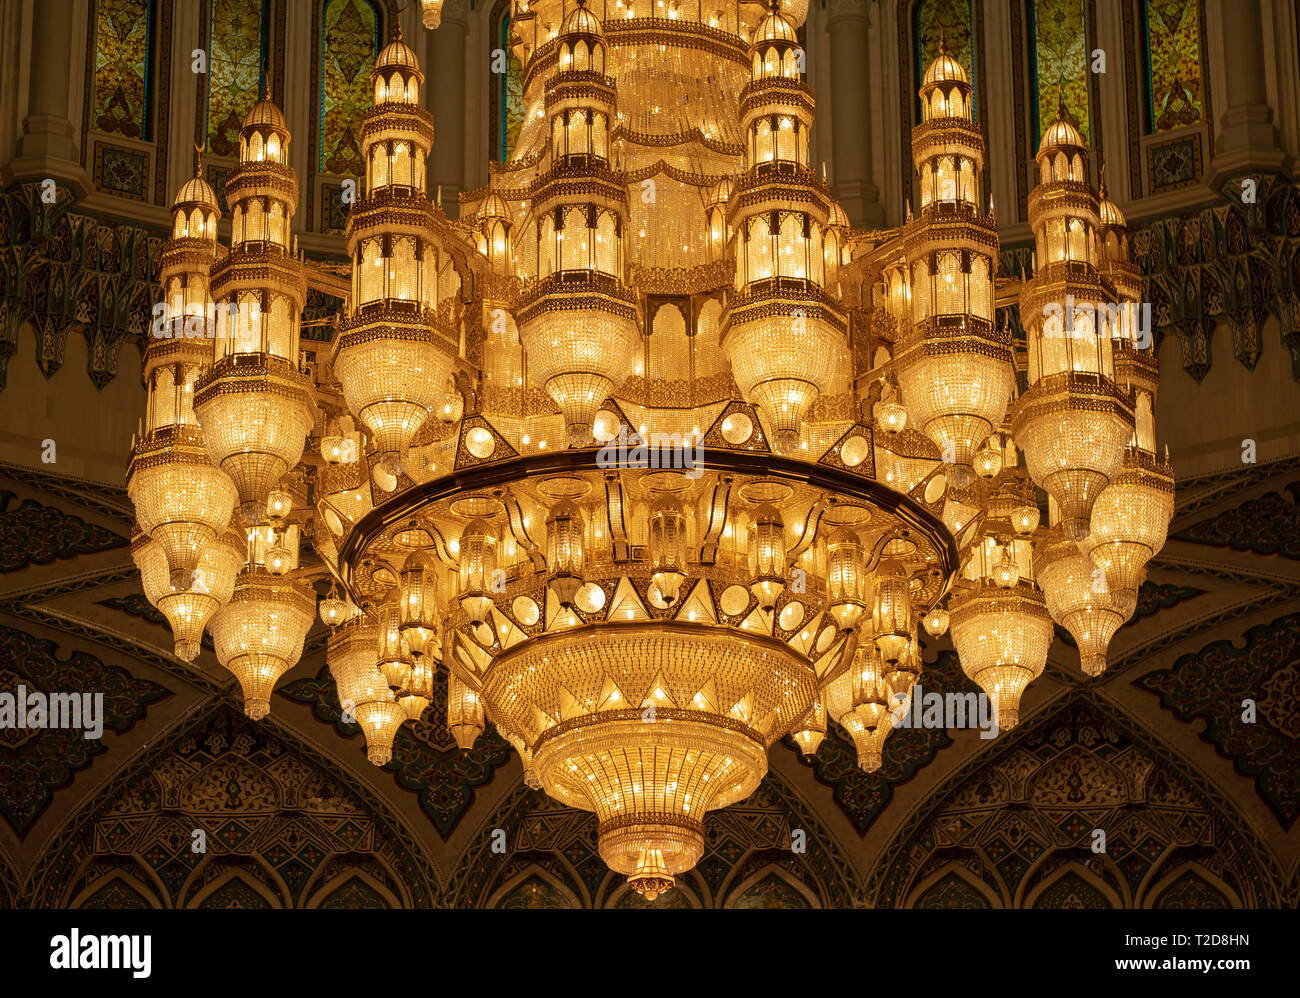 Swarovski lampadario di cristallo all'interno del corridoio principale di preghiera del Sultano Qaboos grande moschea in Muscat Oman Foto Stock